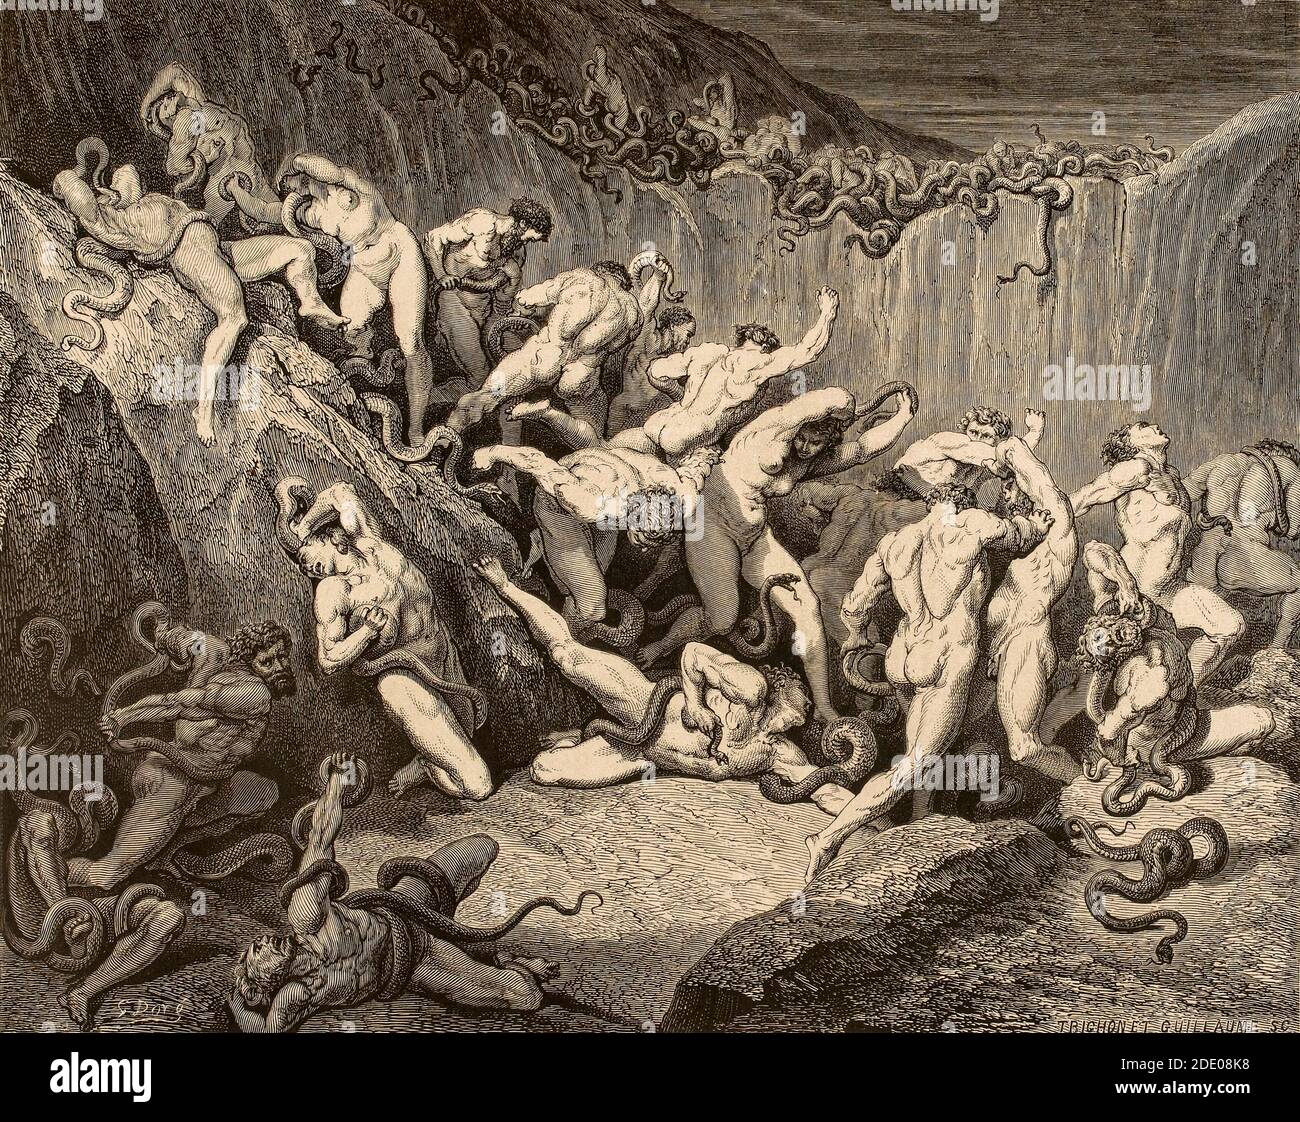 Dante Divina Commedia - Inferno - XXIV canto - il Bedlam di ladri - VIII cerchio - illustrazione di Gustave Dorè Foto Stock